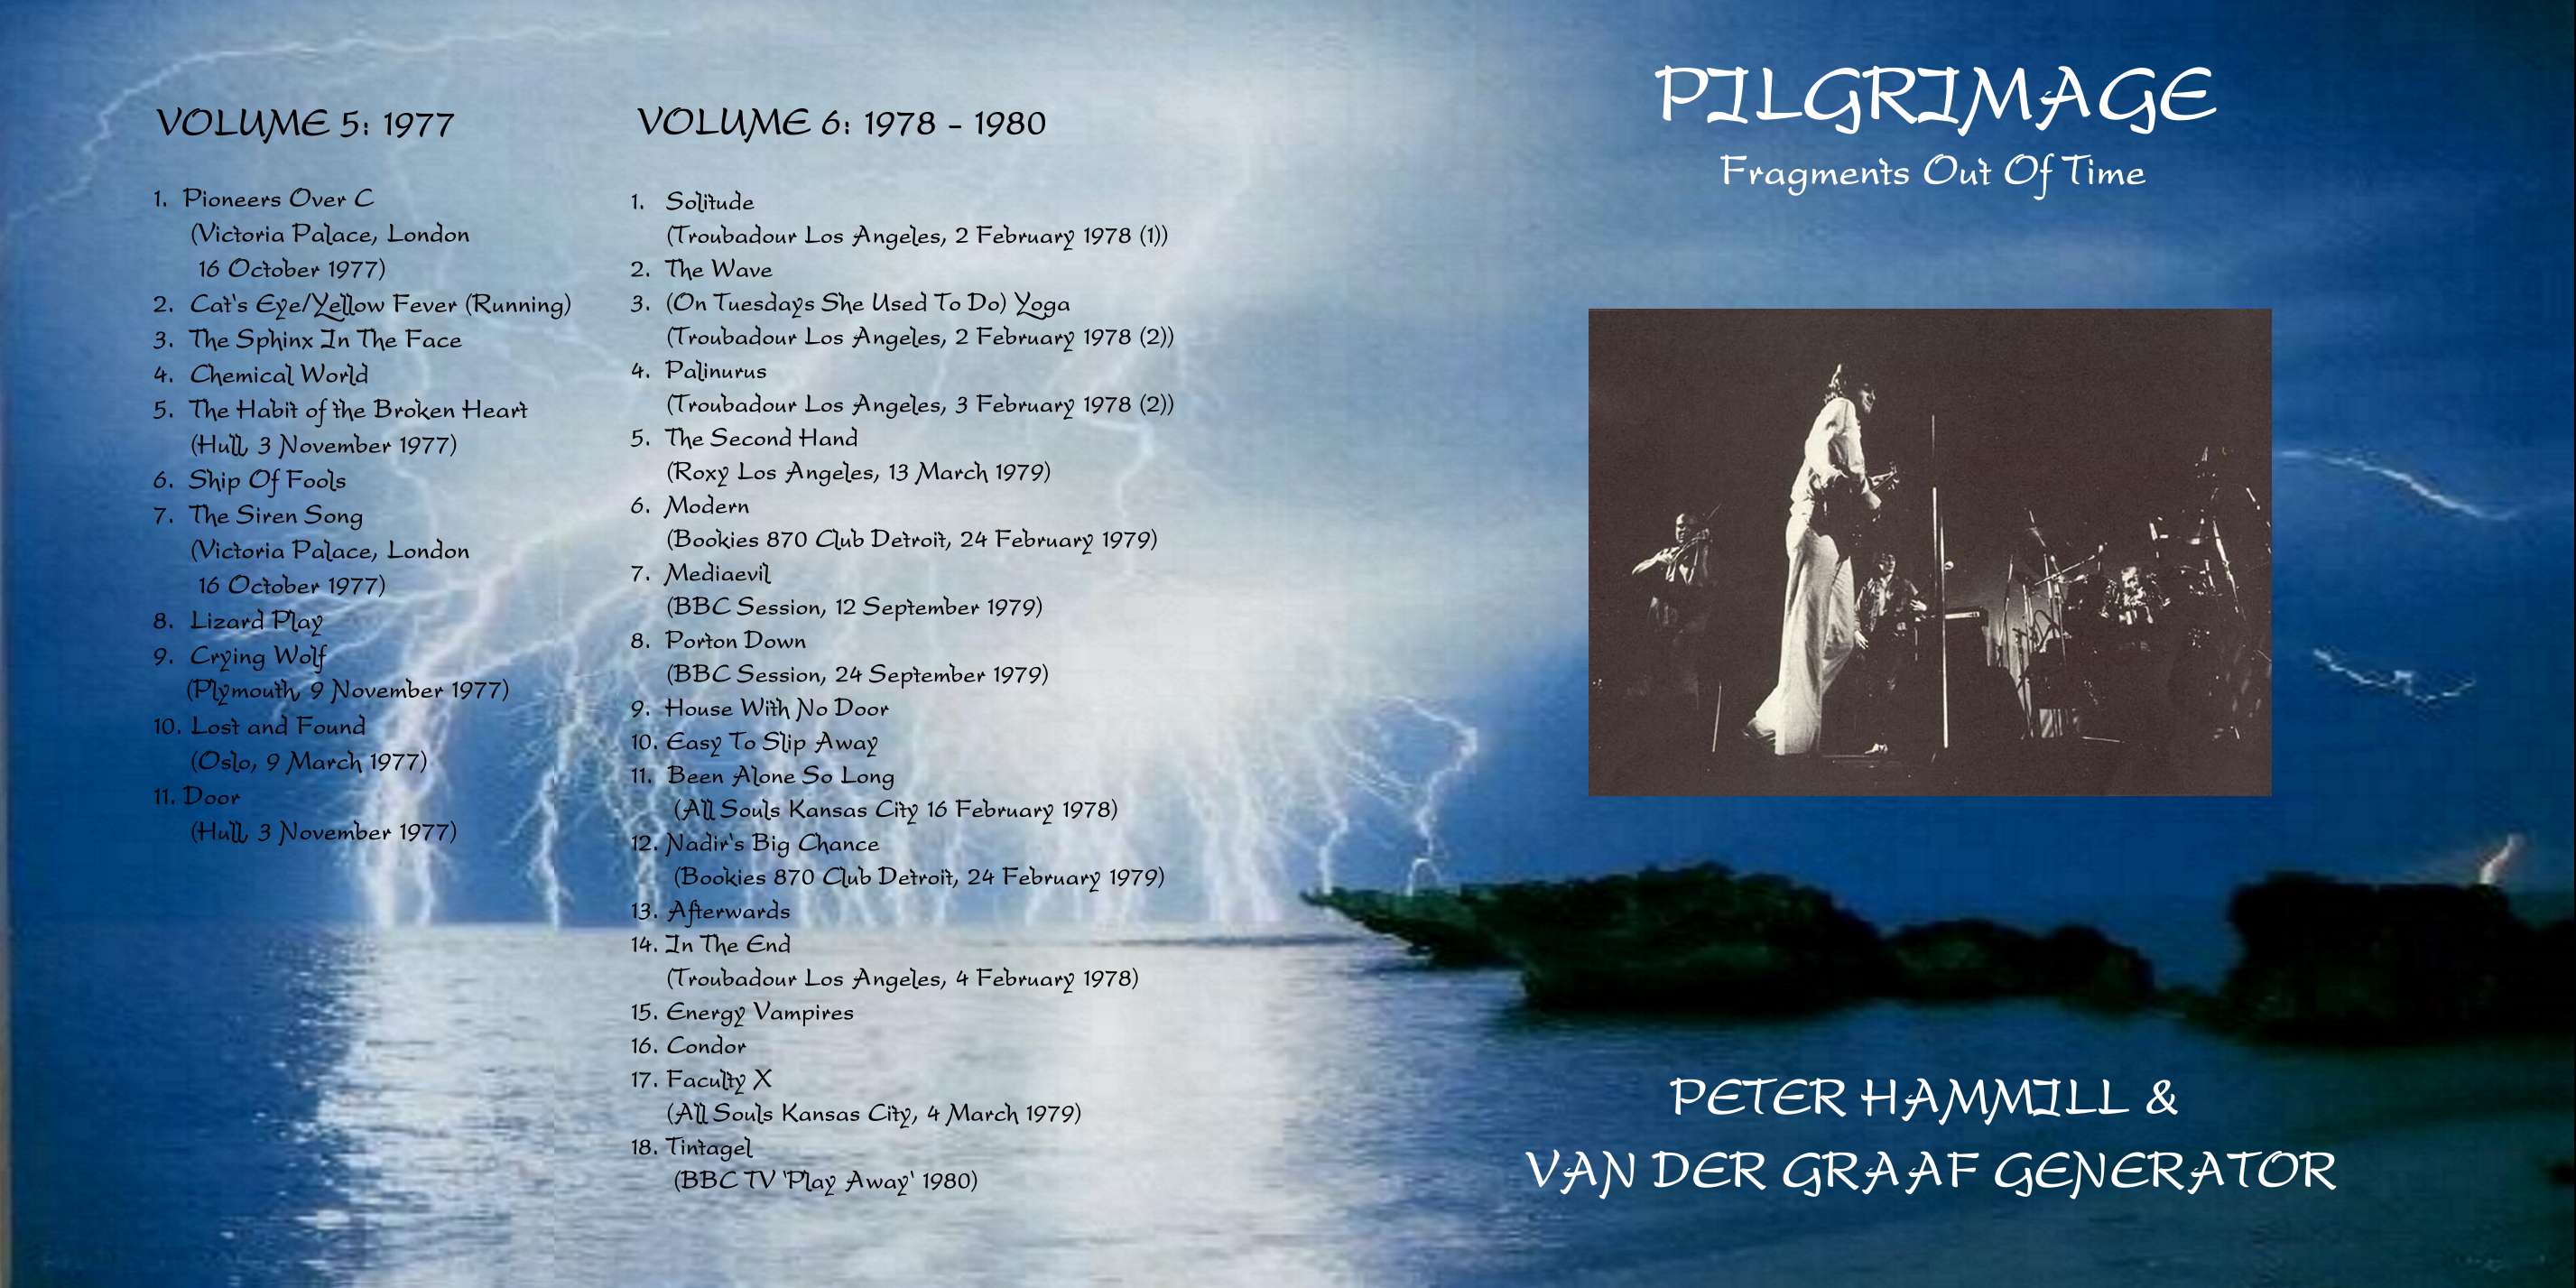 VanDerGraafGeneratorPeterHammill1970-1986Pilgrimage_pt3 (5).jpg